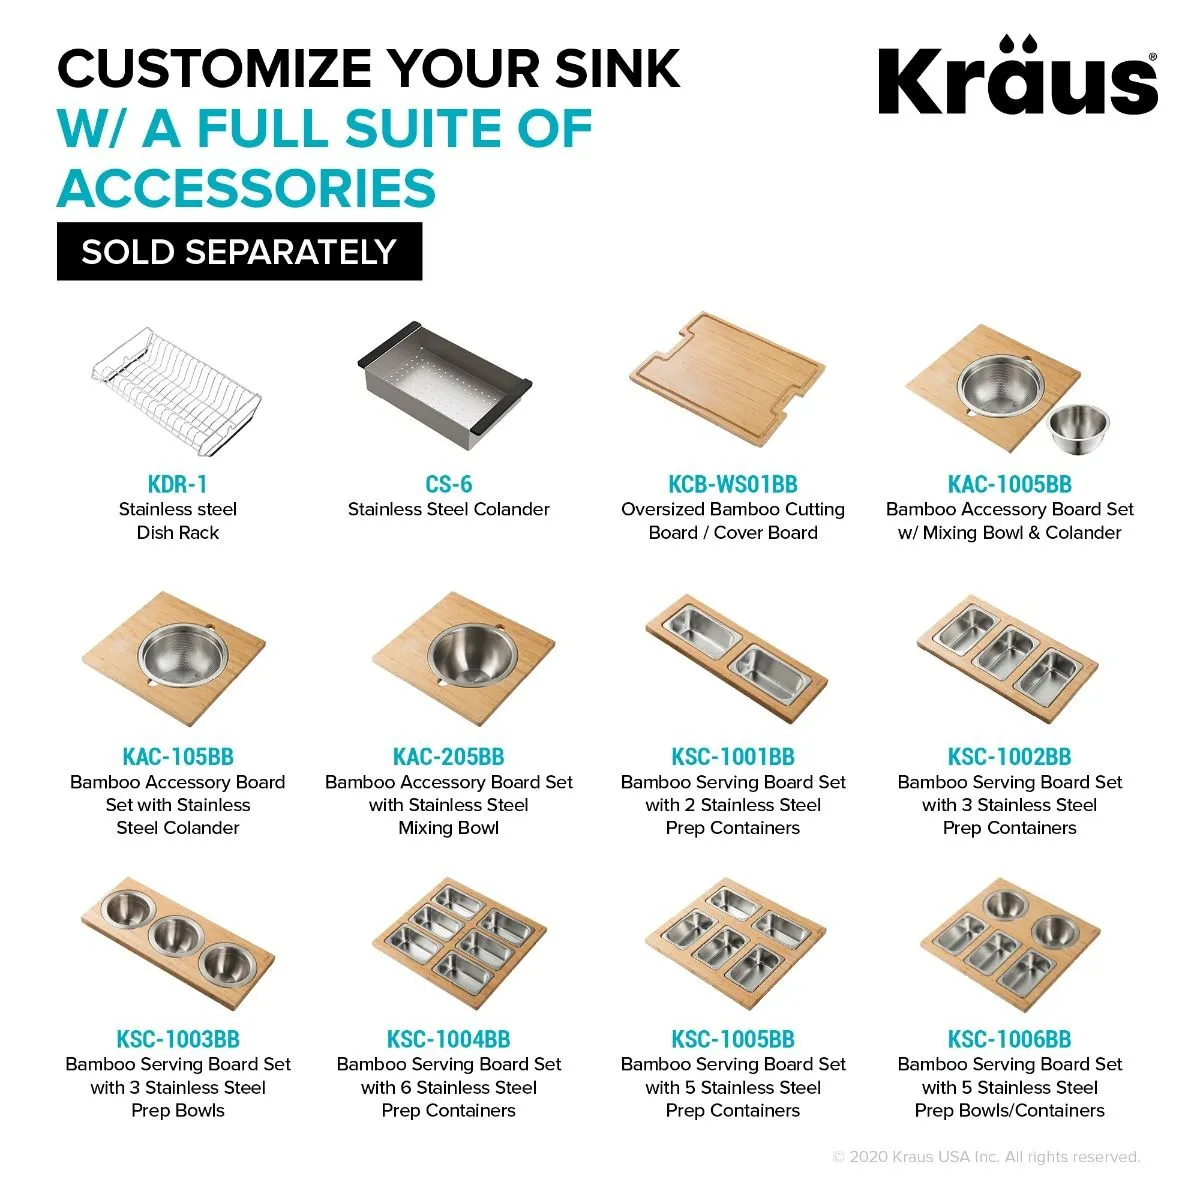 KRAUS Kore Workstation 33" Undermount 16 Gauge Double Bowl Stainless Steel Kitchen Sink with Accessories-Kitchen Sinks-DirectSinks